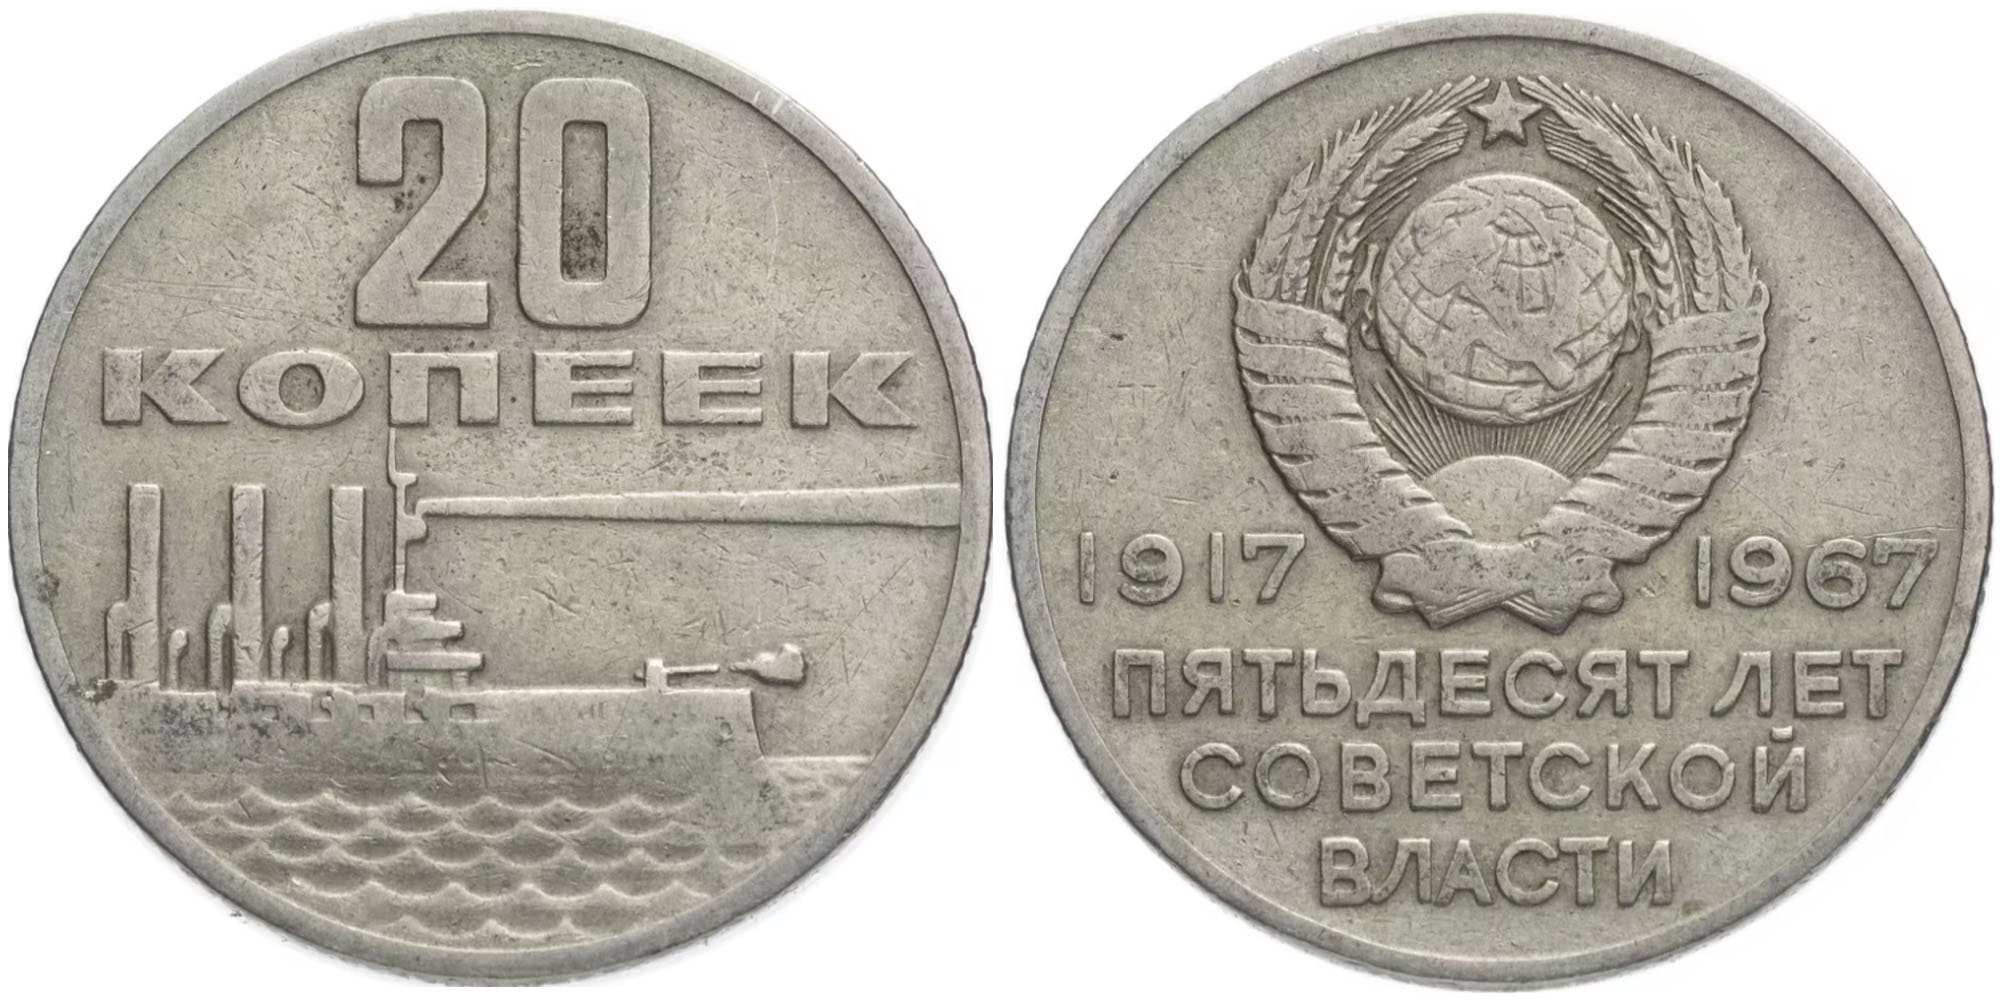 50 копеек 1917 1967. Монеты СССР 1917-1967. Монета 20 копеек 1917.